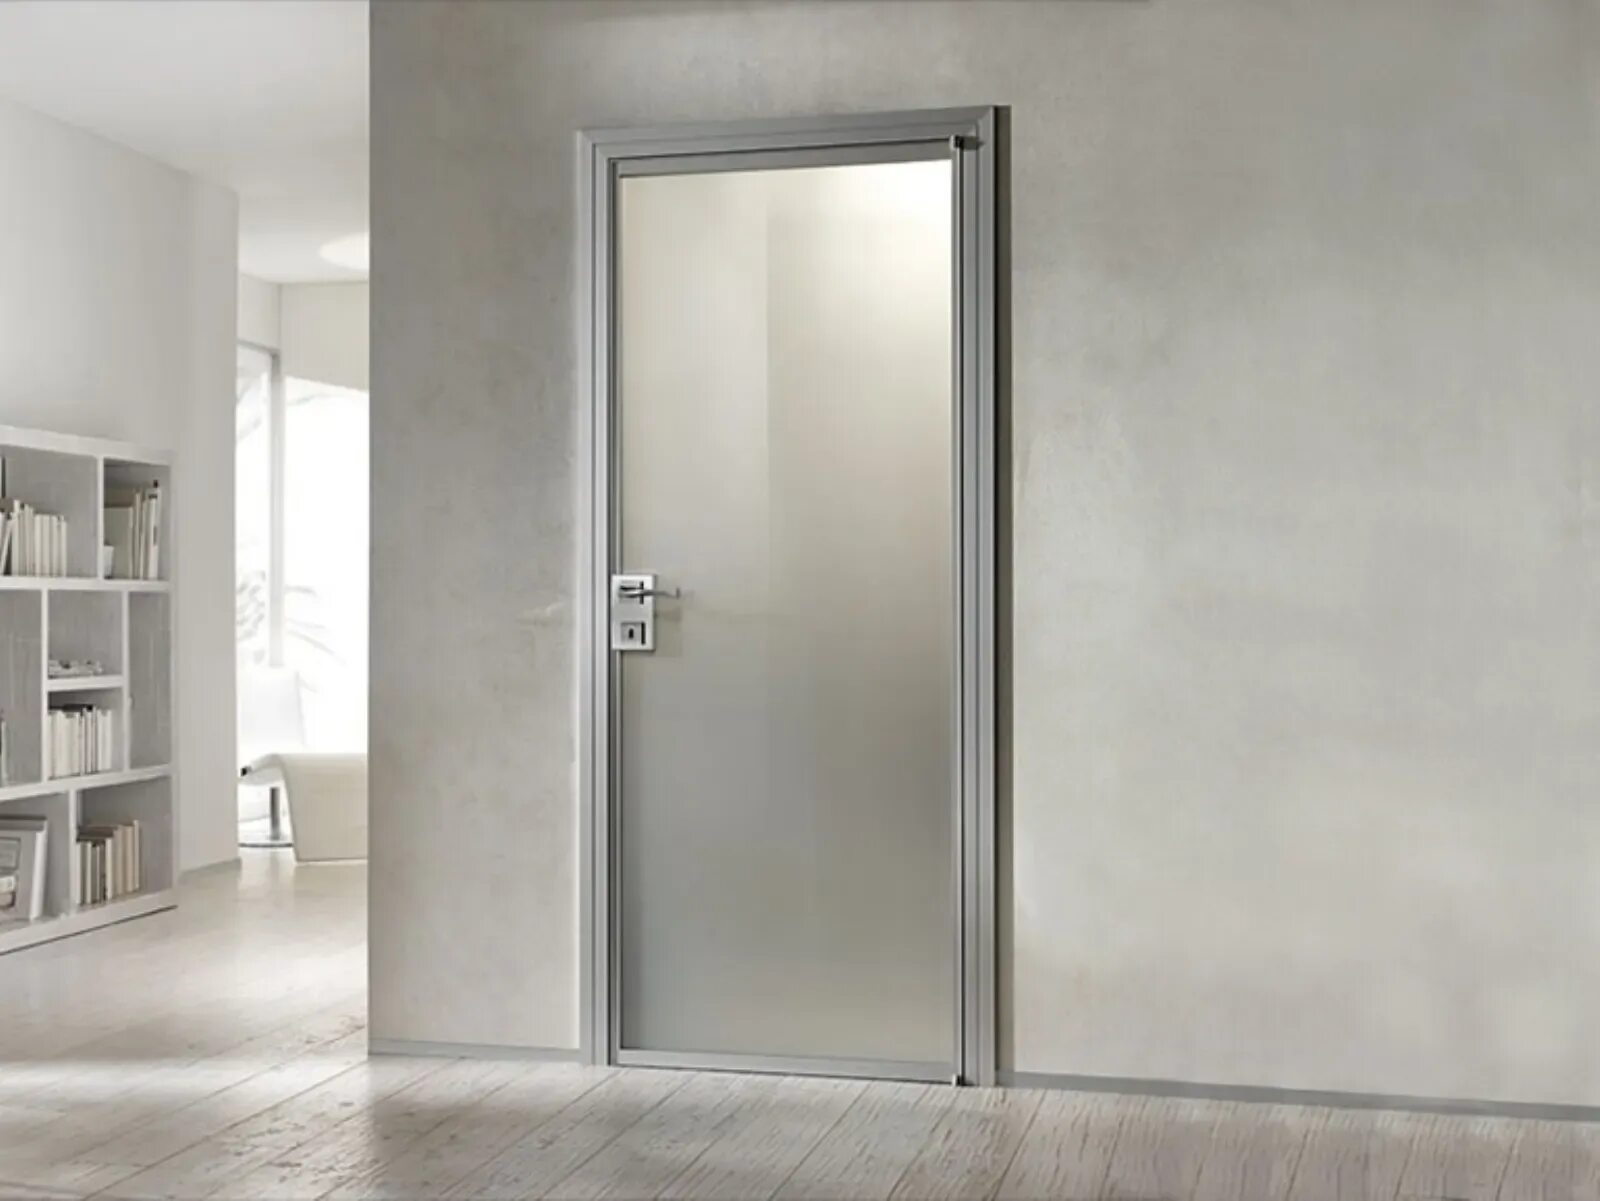 Дверь стекло межкомнатная алюминиевая. Barausse Door. Скрытая дверь Inner Barausse. Двери в стиле Минимализм. Алюминиевые межкомнатные двери.